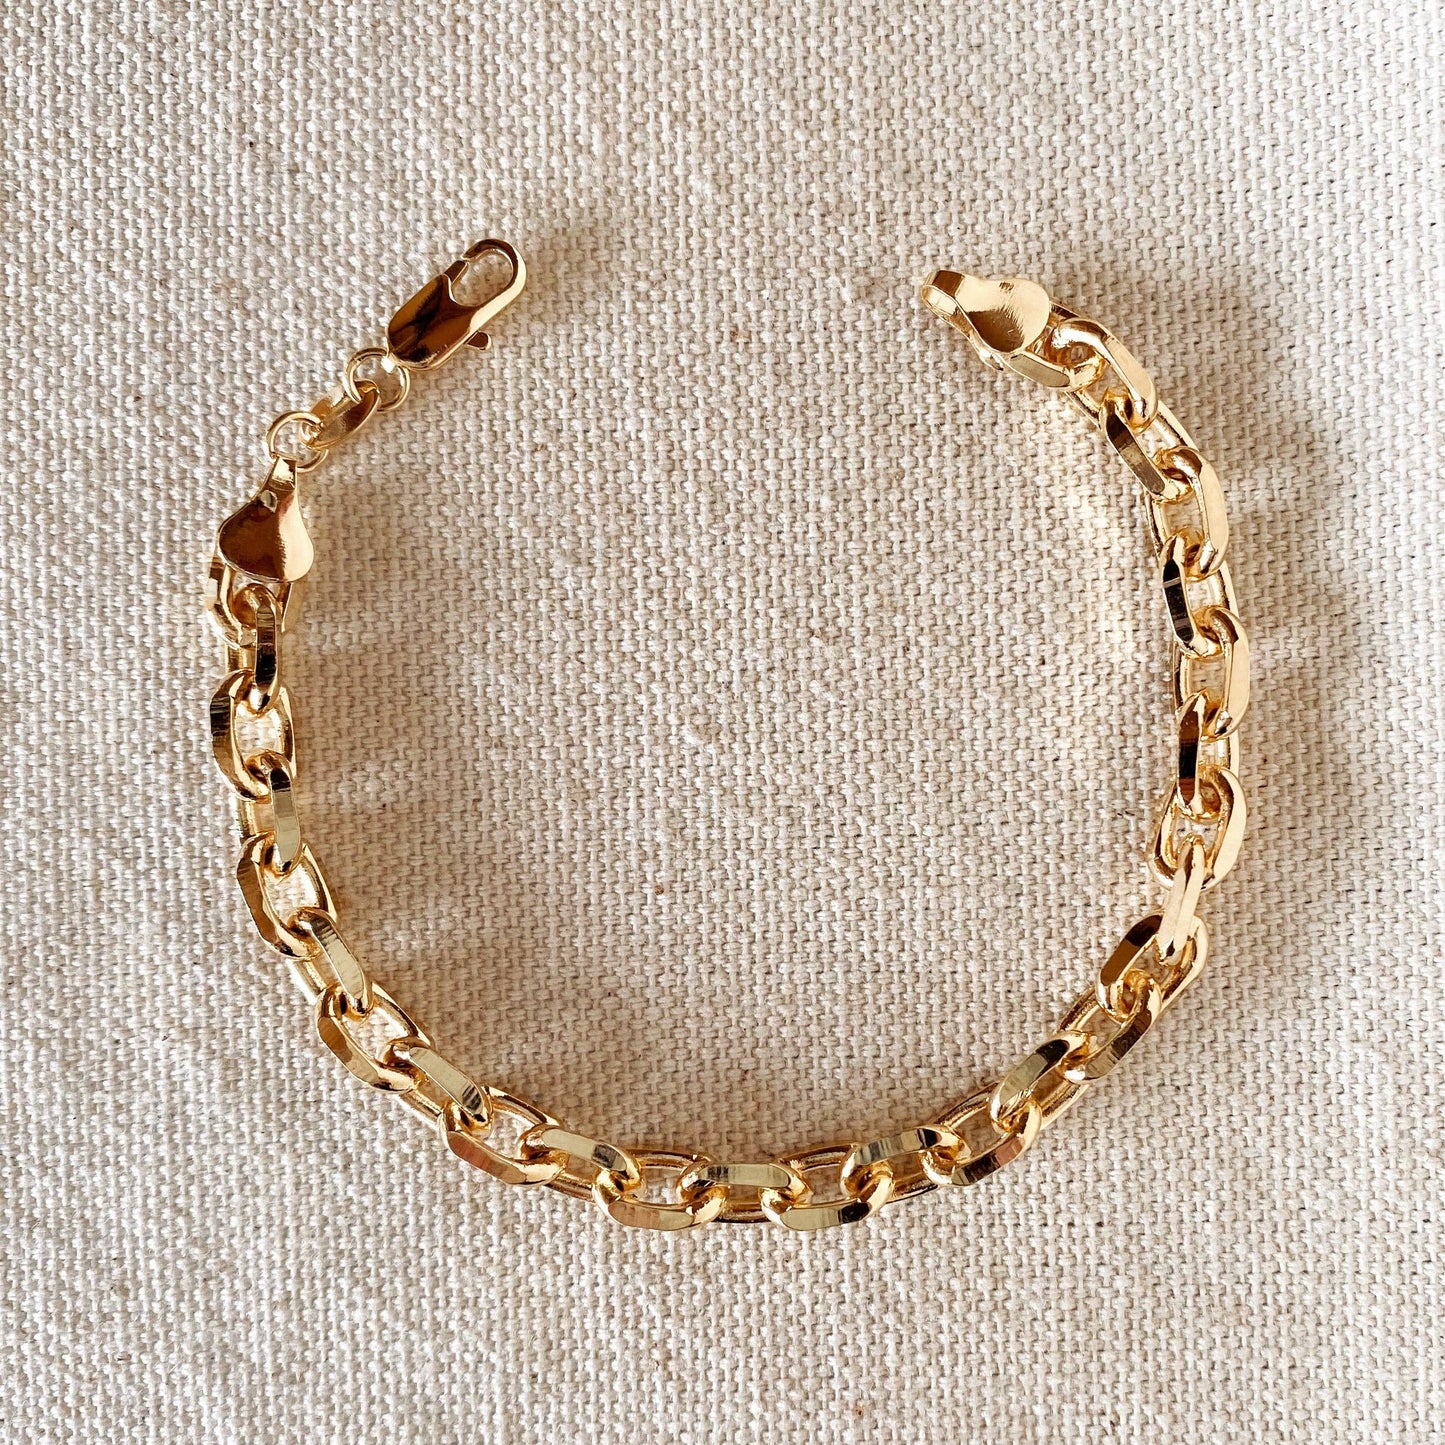 18k Gold Filled 7mm Link Bracelet